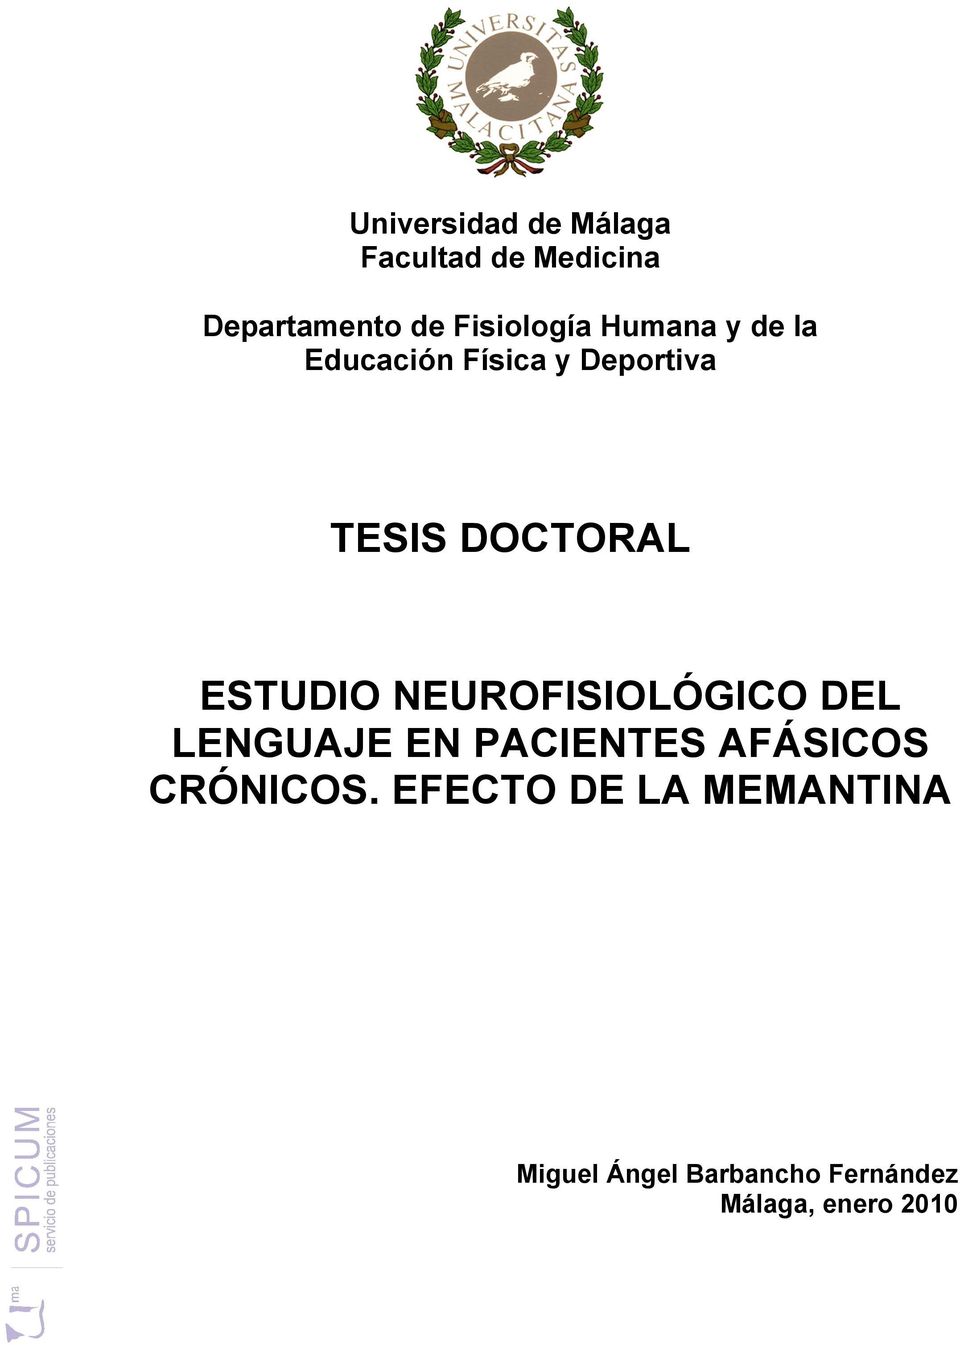 DOCTORAL ESTUDIO NEUROFISIOLÓGICO DEL LENGUAJE EN PACIENTES AFÁSICOS